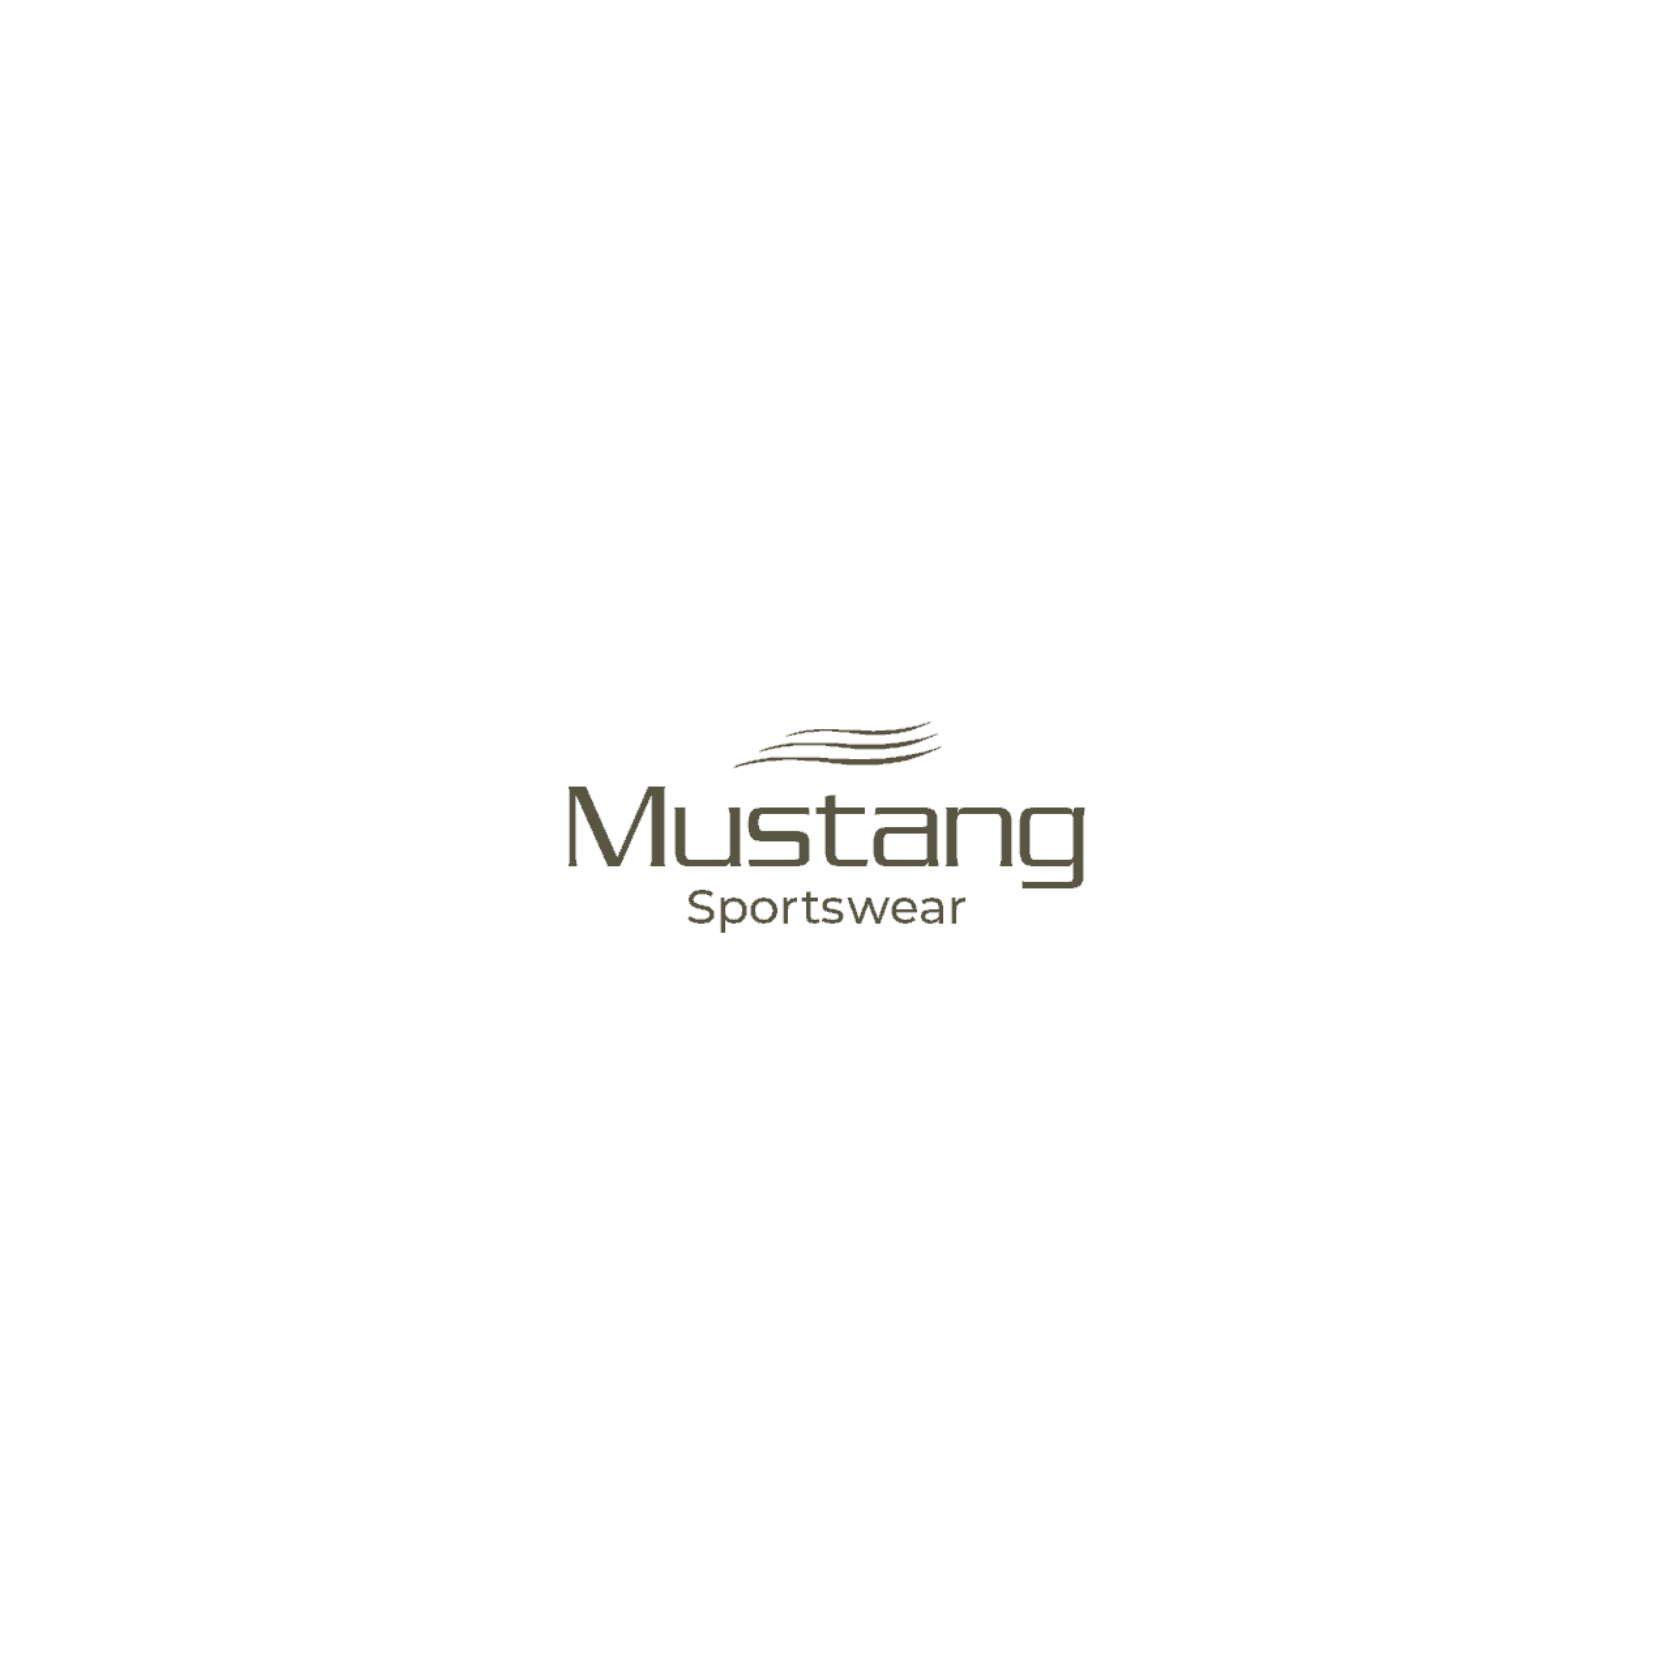 Mustang Sportswear